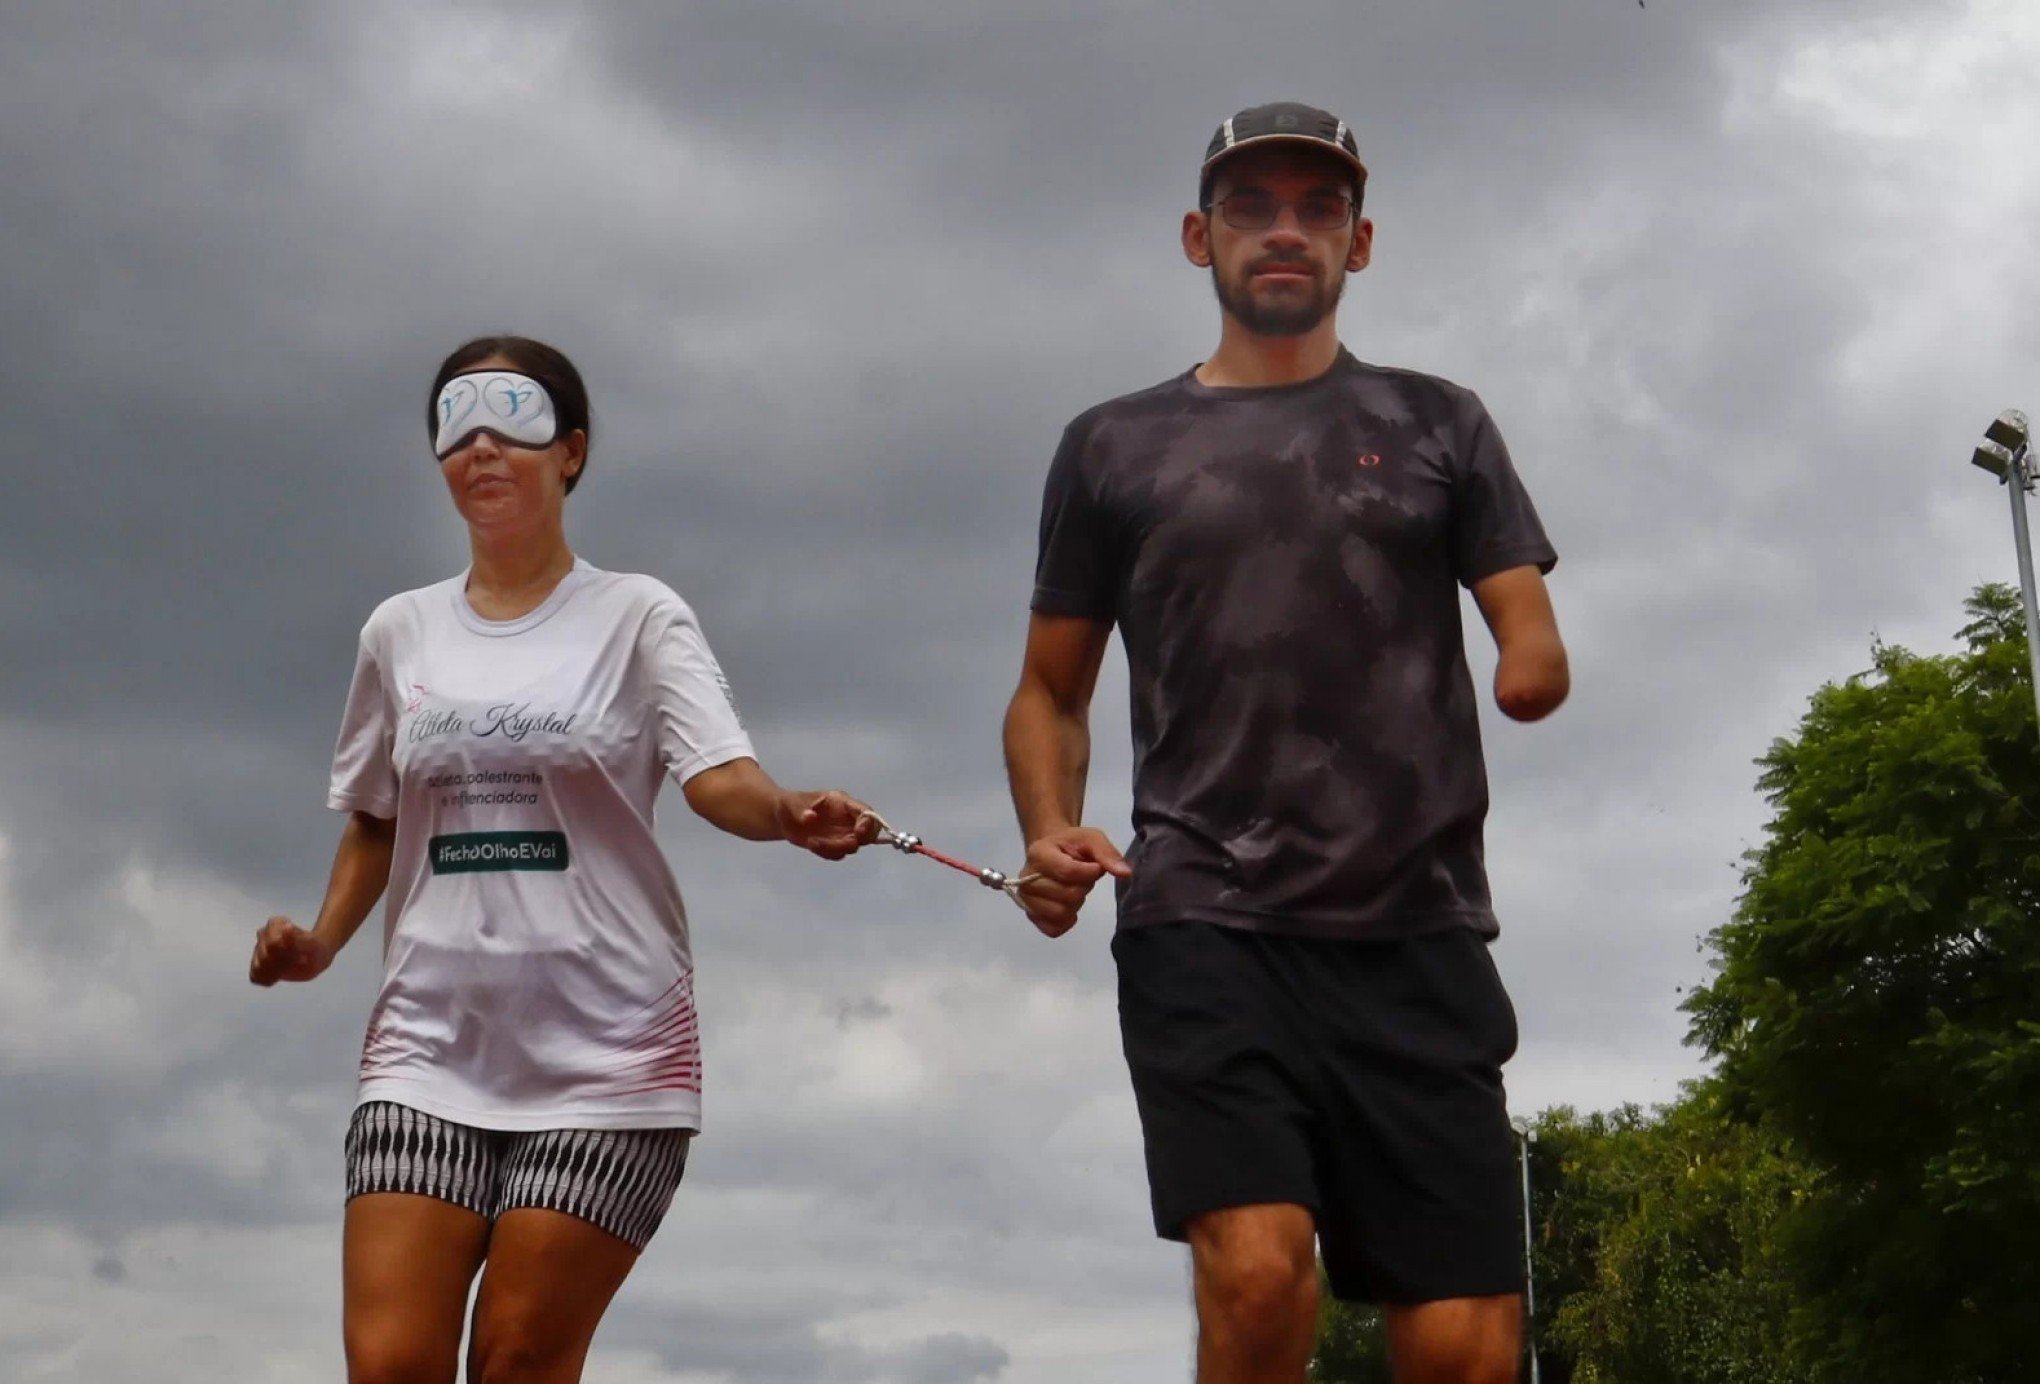 Atleta cega sonha encontrar um patrocinador para correr